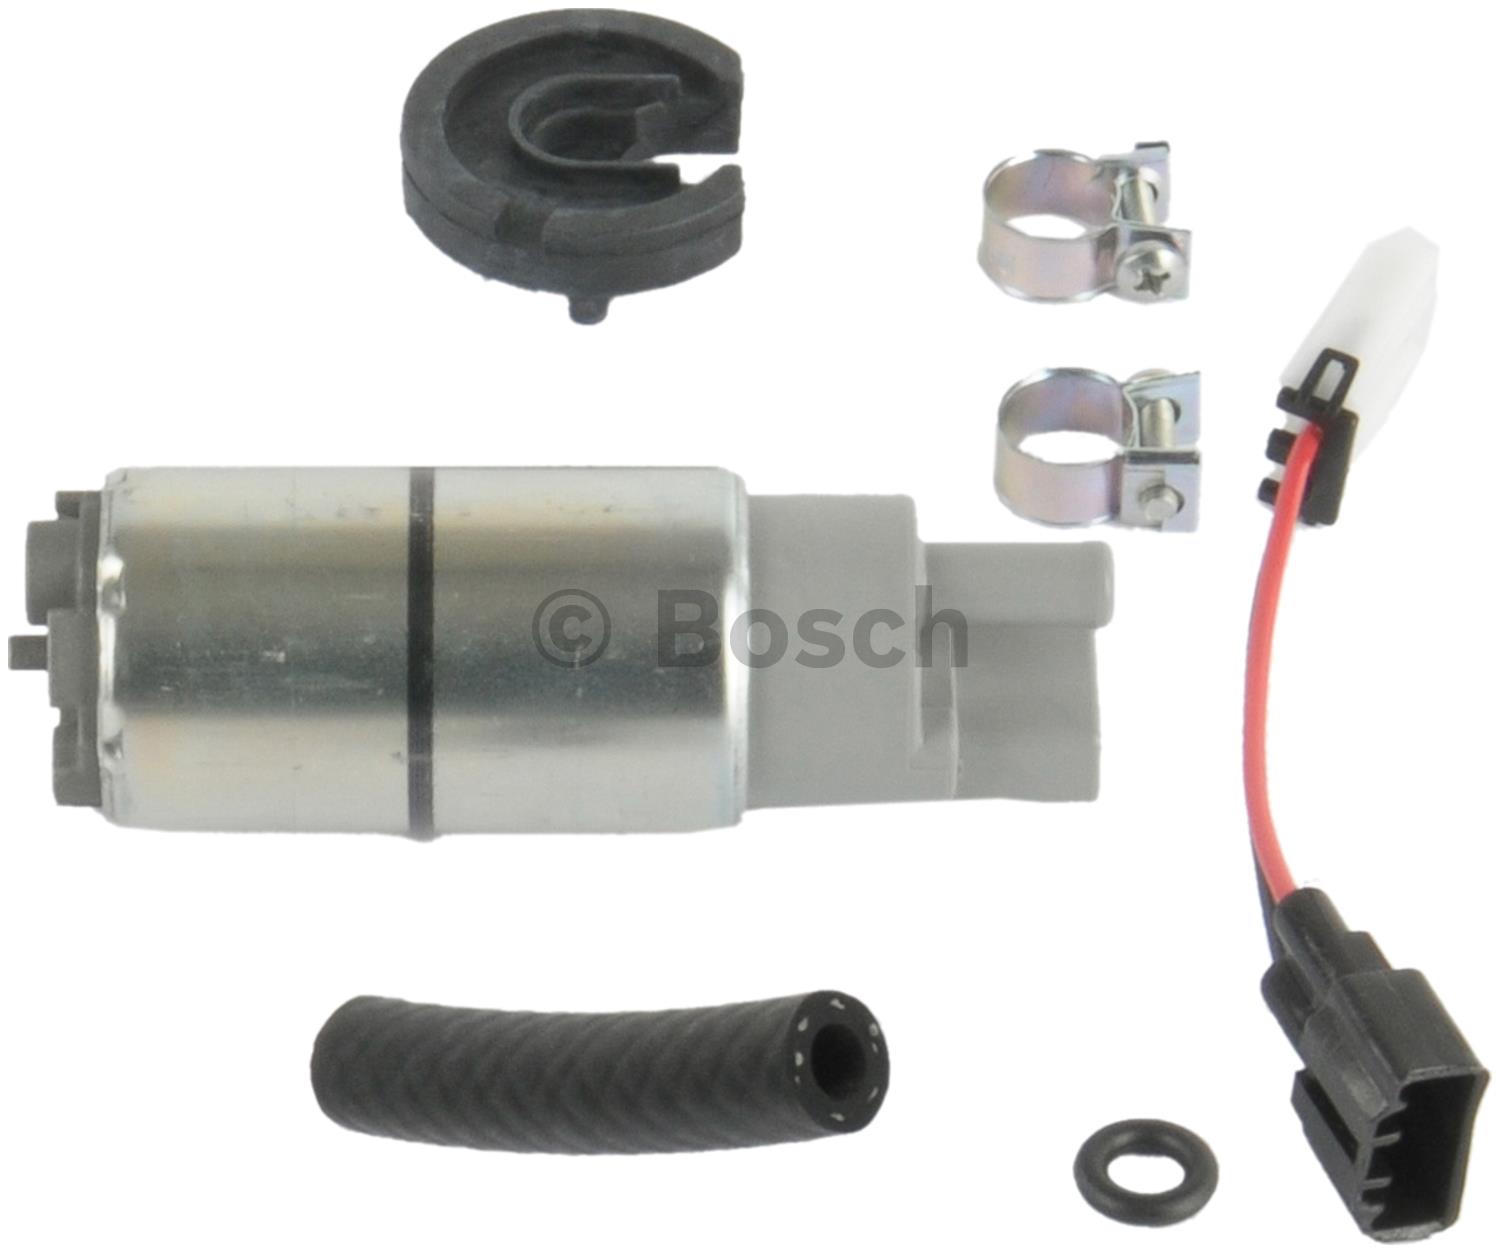 Show details for Bosch 69487 Fuel Pump